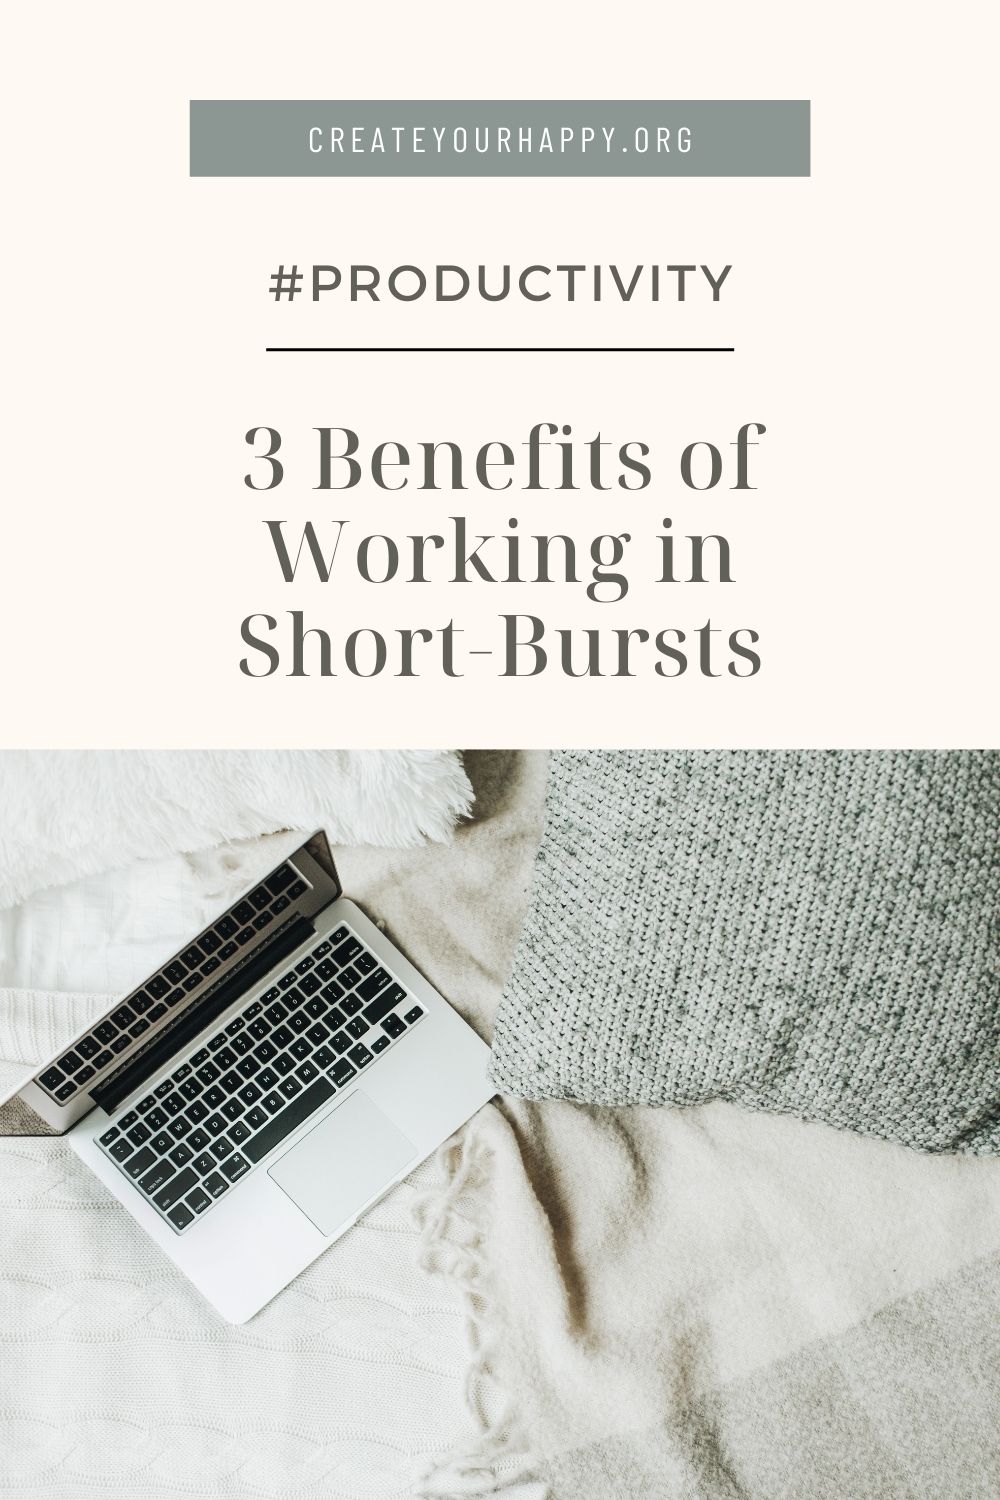 3 Benefits of Working in Short-Bursts